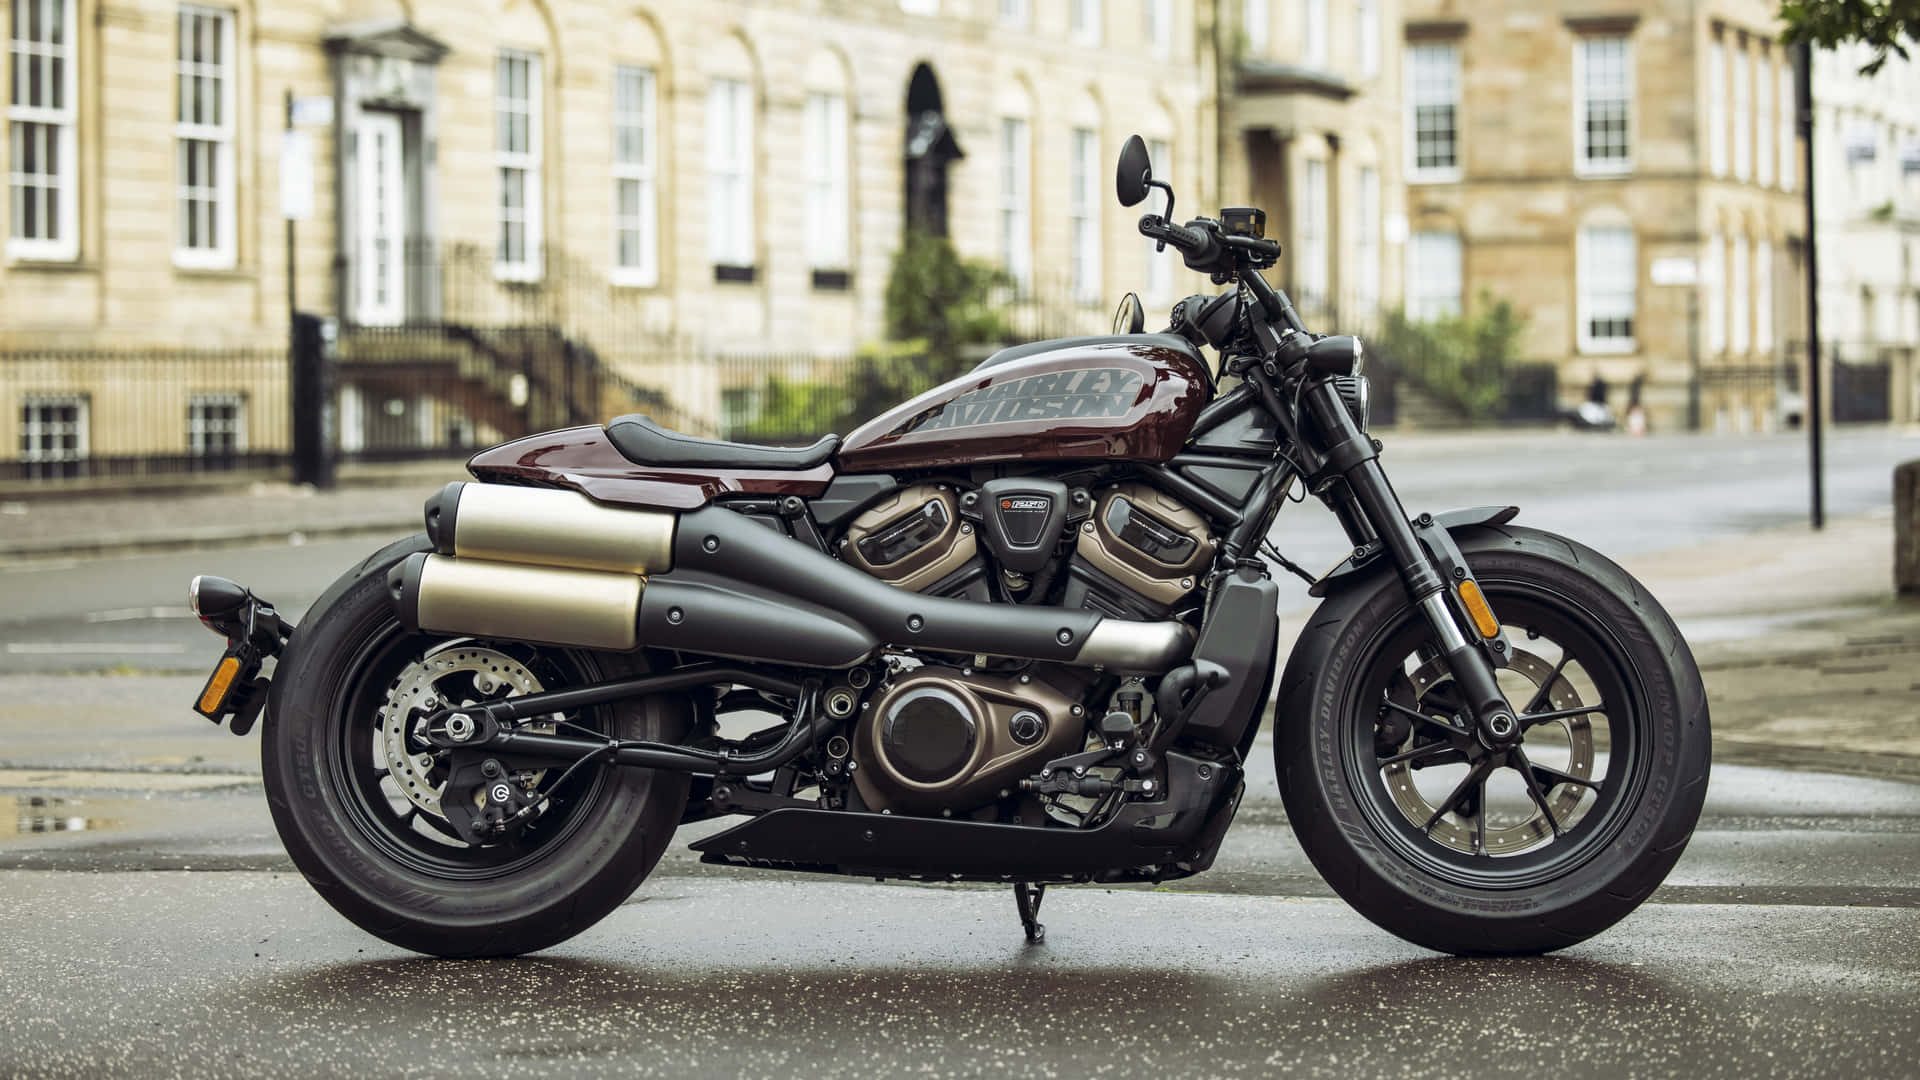 Vis din stil med et klassisk Harley Davidson HD Wallpaper